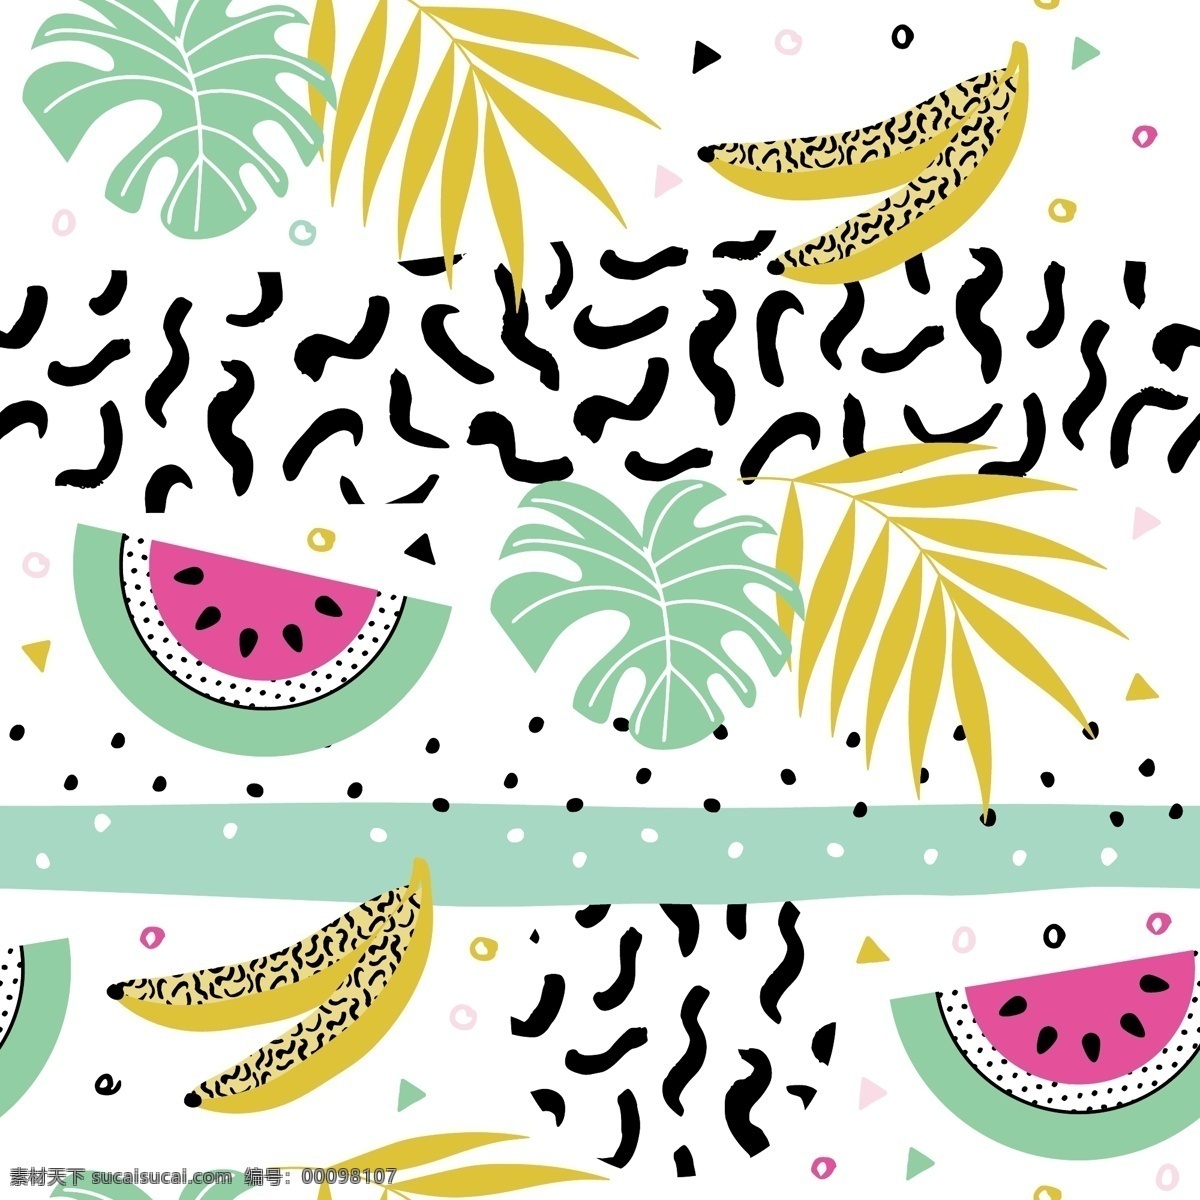 创意 细化 香蕉 夏日 拼贴 时尚 潮流 涂鸦 小清新 卡通 填充 网格 插画 矢量 背景 海报 广告 包装 印刷 夏天